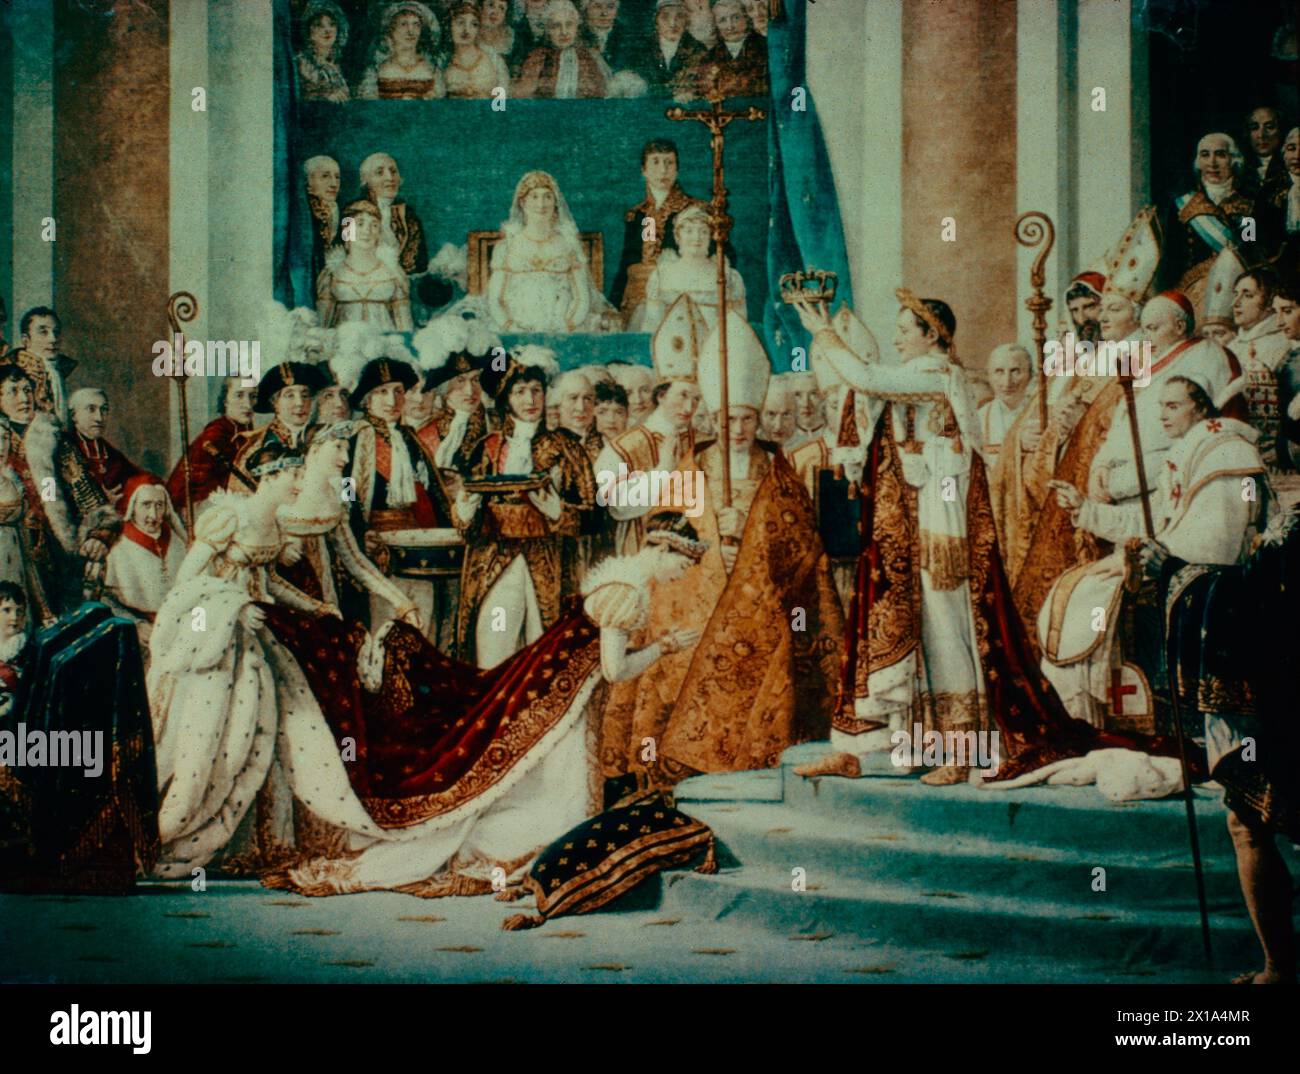 Napoléon se couronne empereur des Français, peinture de l'artiste français Jacques-Louis David, XVIIIe siècle Banque D'Images